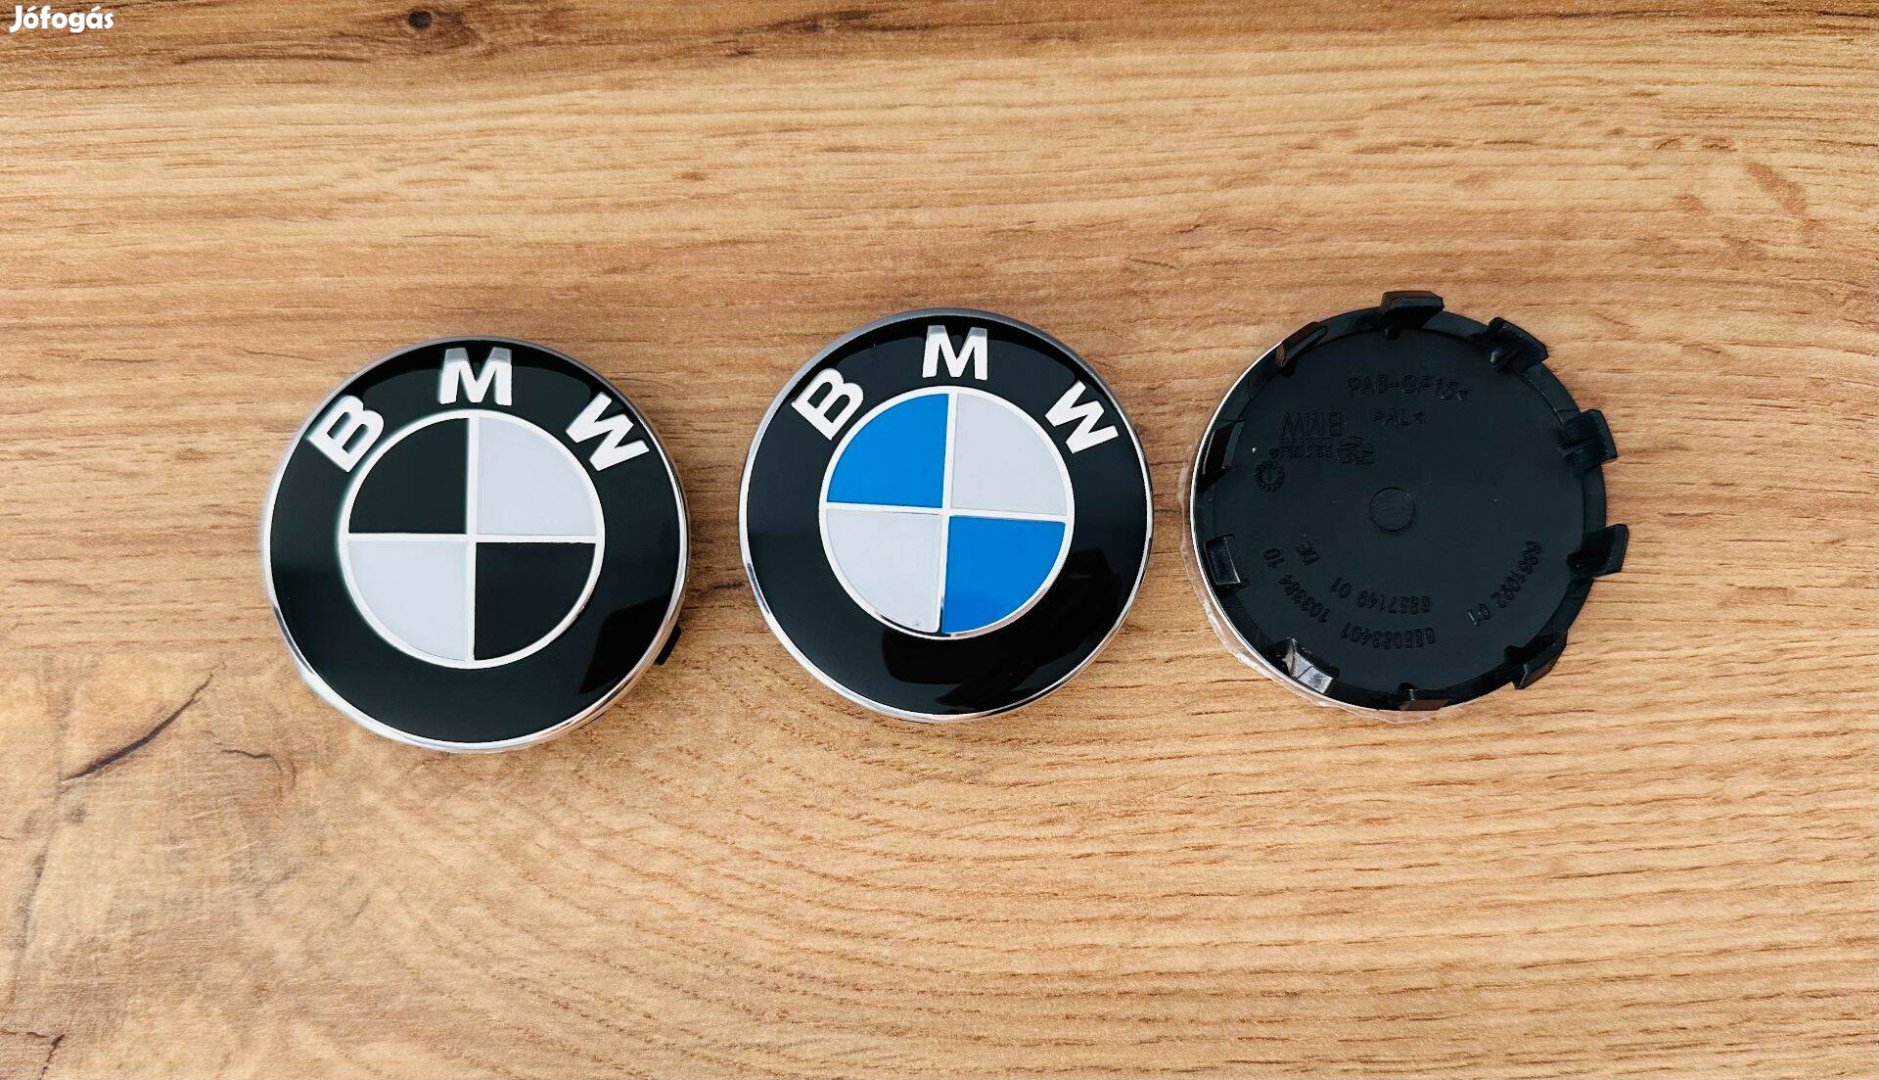 Új BMW 56mm felni kupak alufelni felniközép felnikupak embléma 6857149